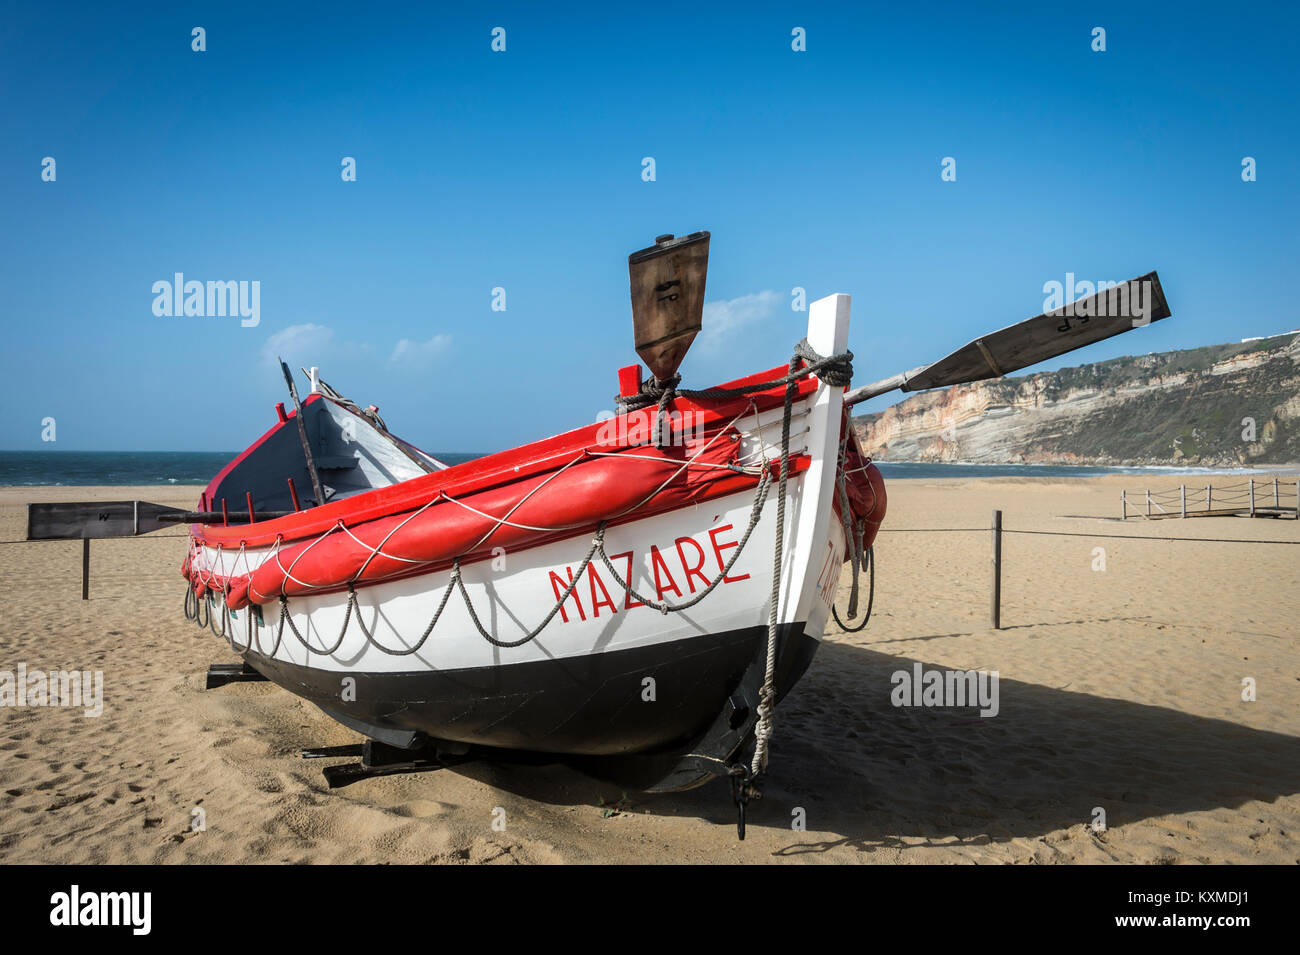 Traditionelle rot und weiß lackiert Rettungsboot auf den Strand von Nazare, Portugal. Stockfoto